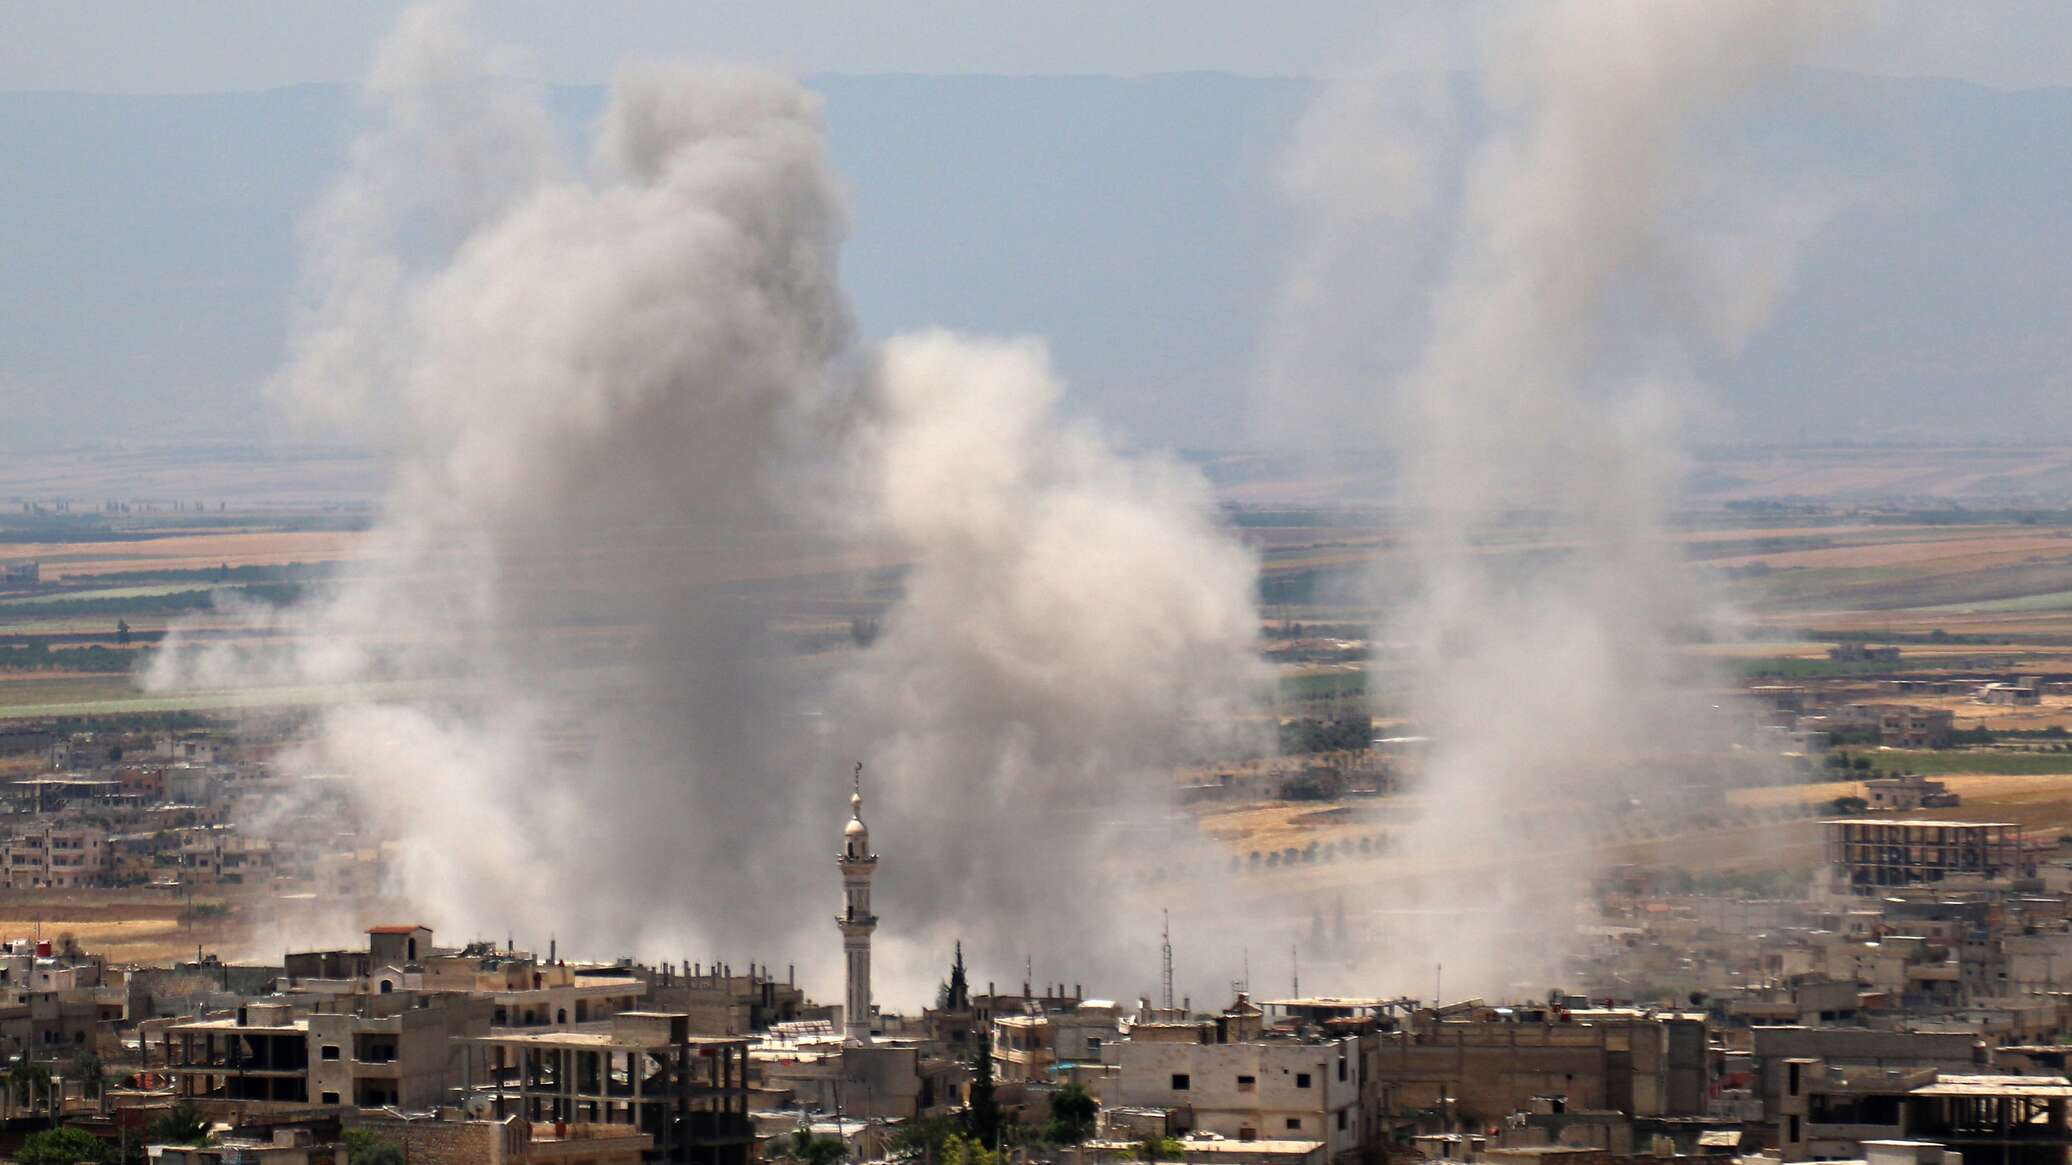 البنتاغون: القوات الأمريكية قصفت موقعا شرقي سوريا بتوجيه من الرئيس بايدن